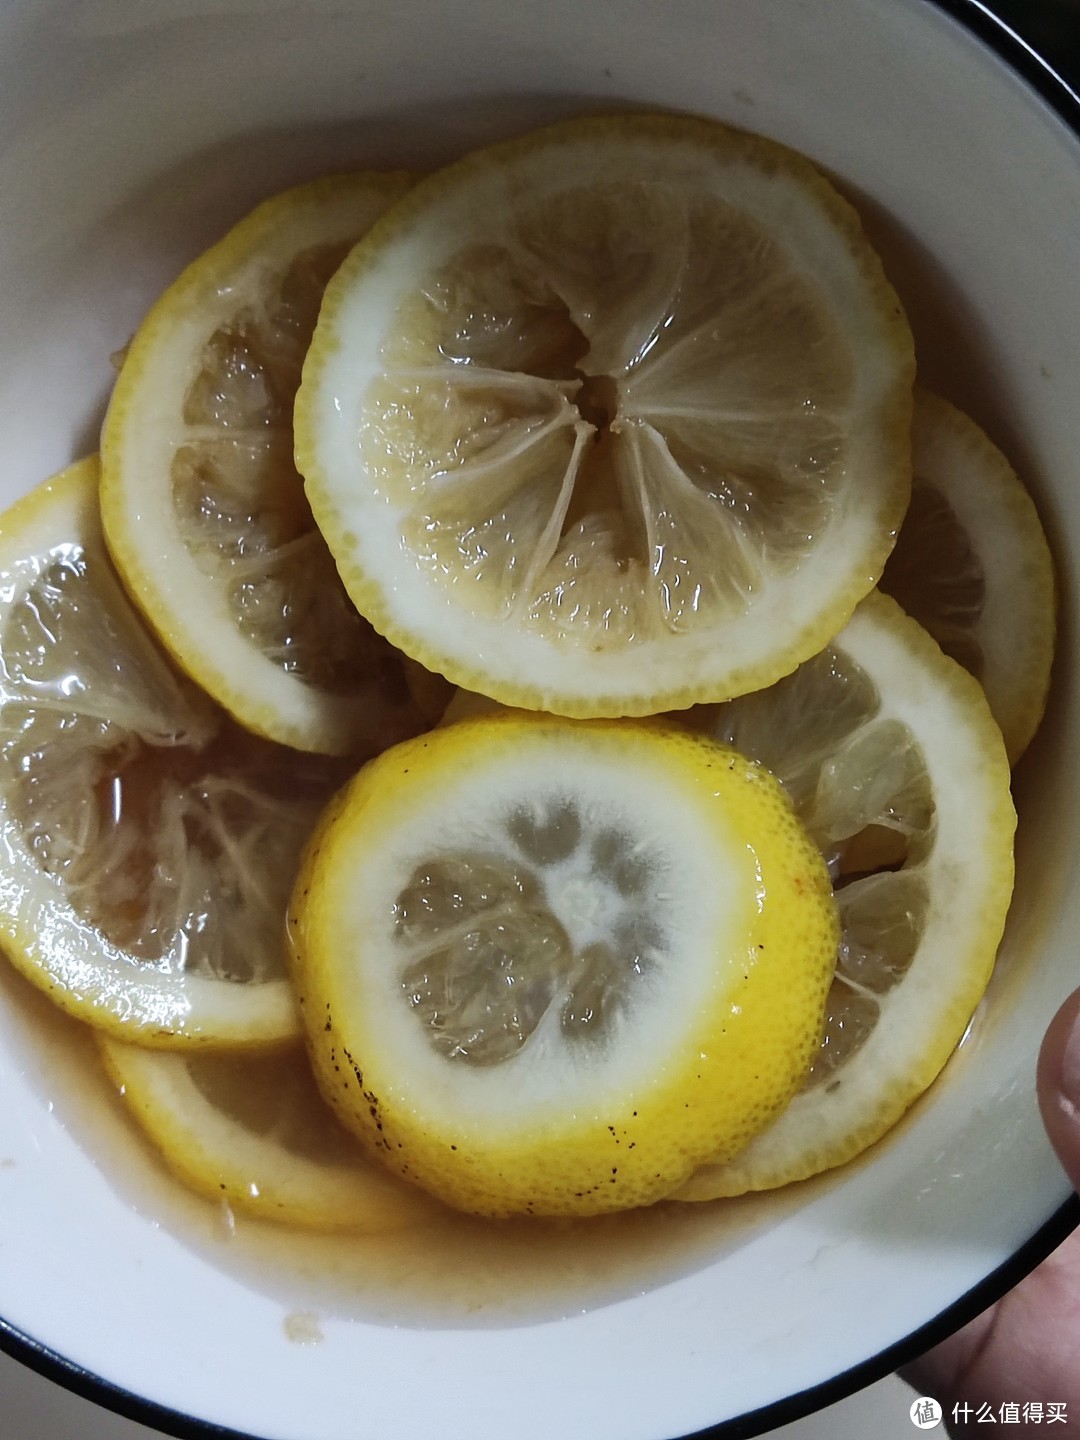 乌龙茶加柠檬是什么味道?